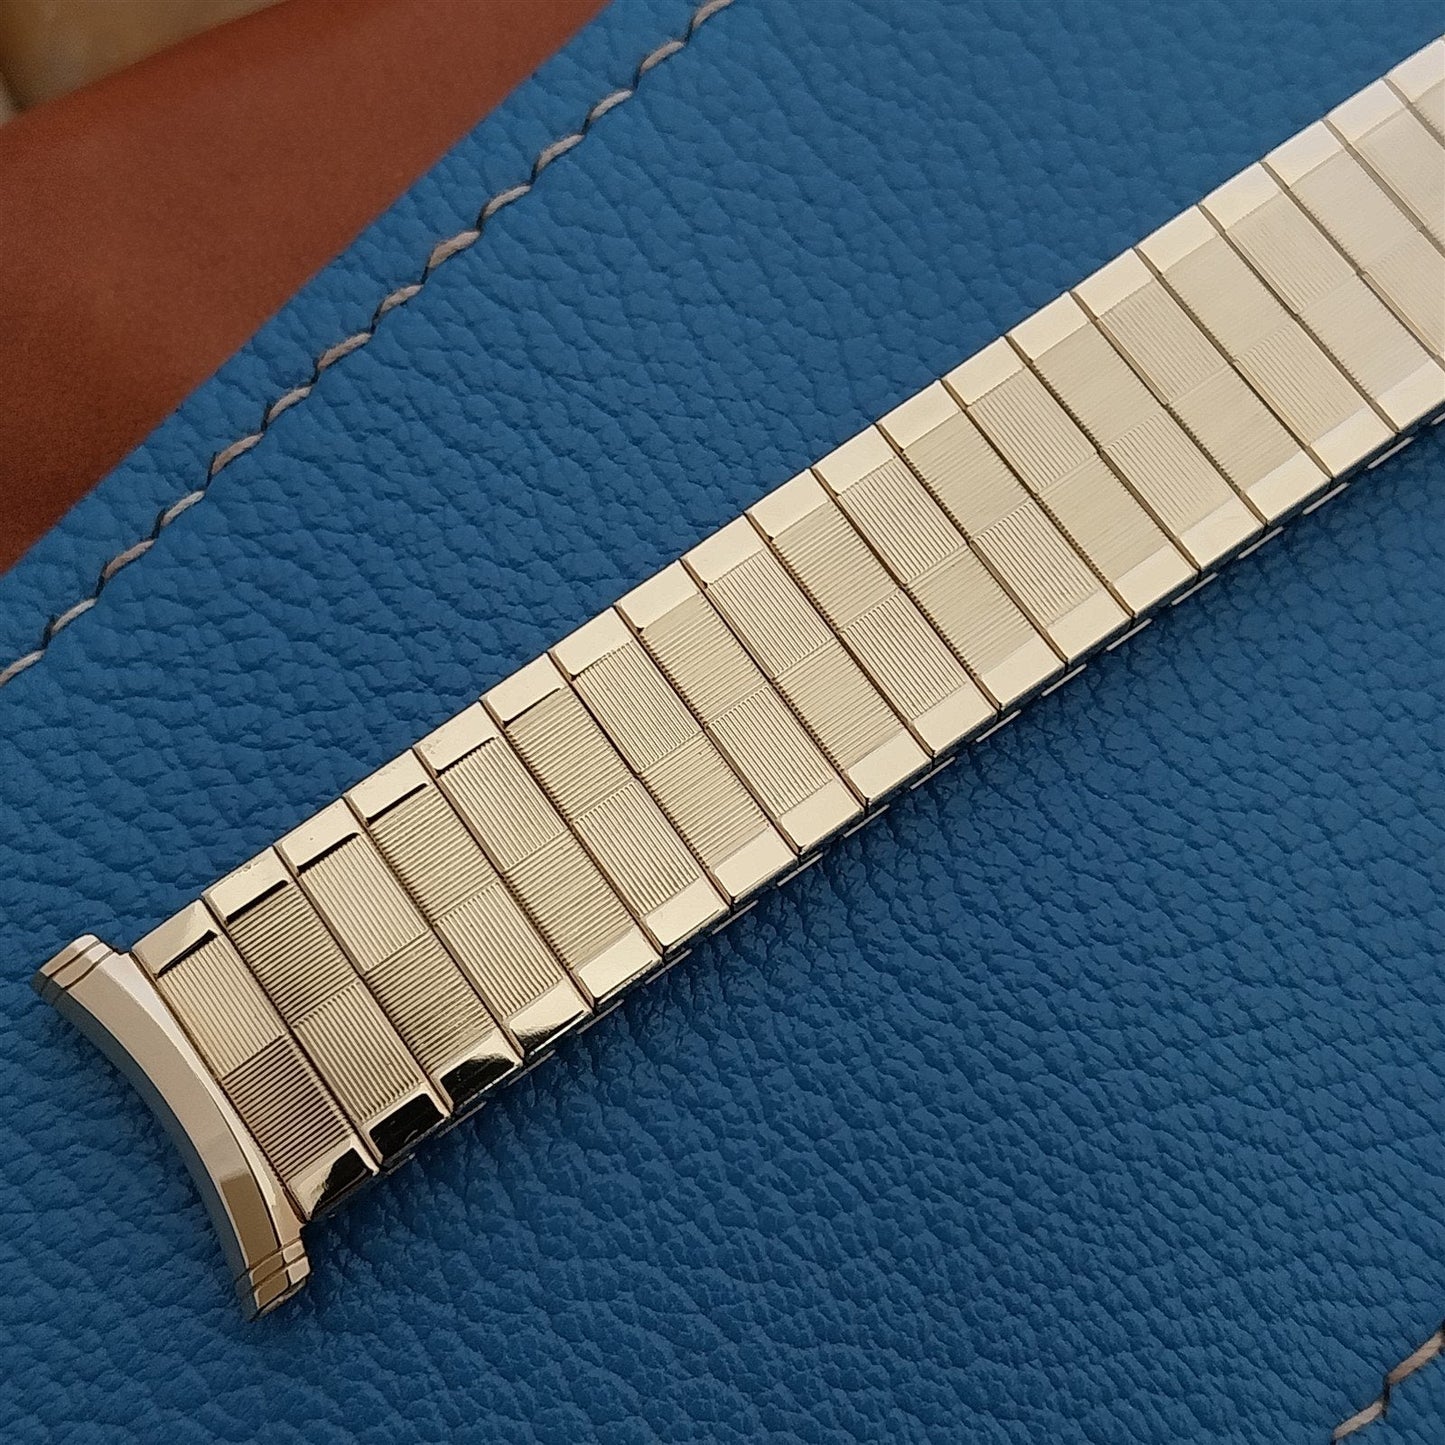 19mm 18mm 16mm Speidel Domino 10k Gold-Filled Expansion 1965 Vintage Watch Band